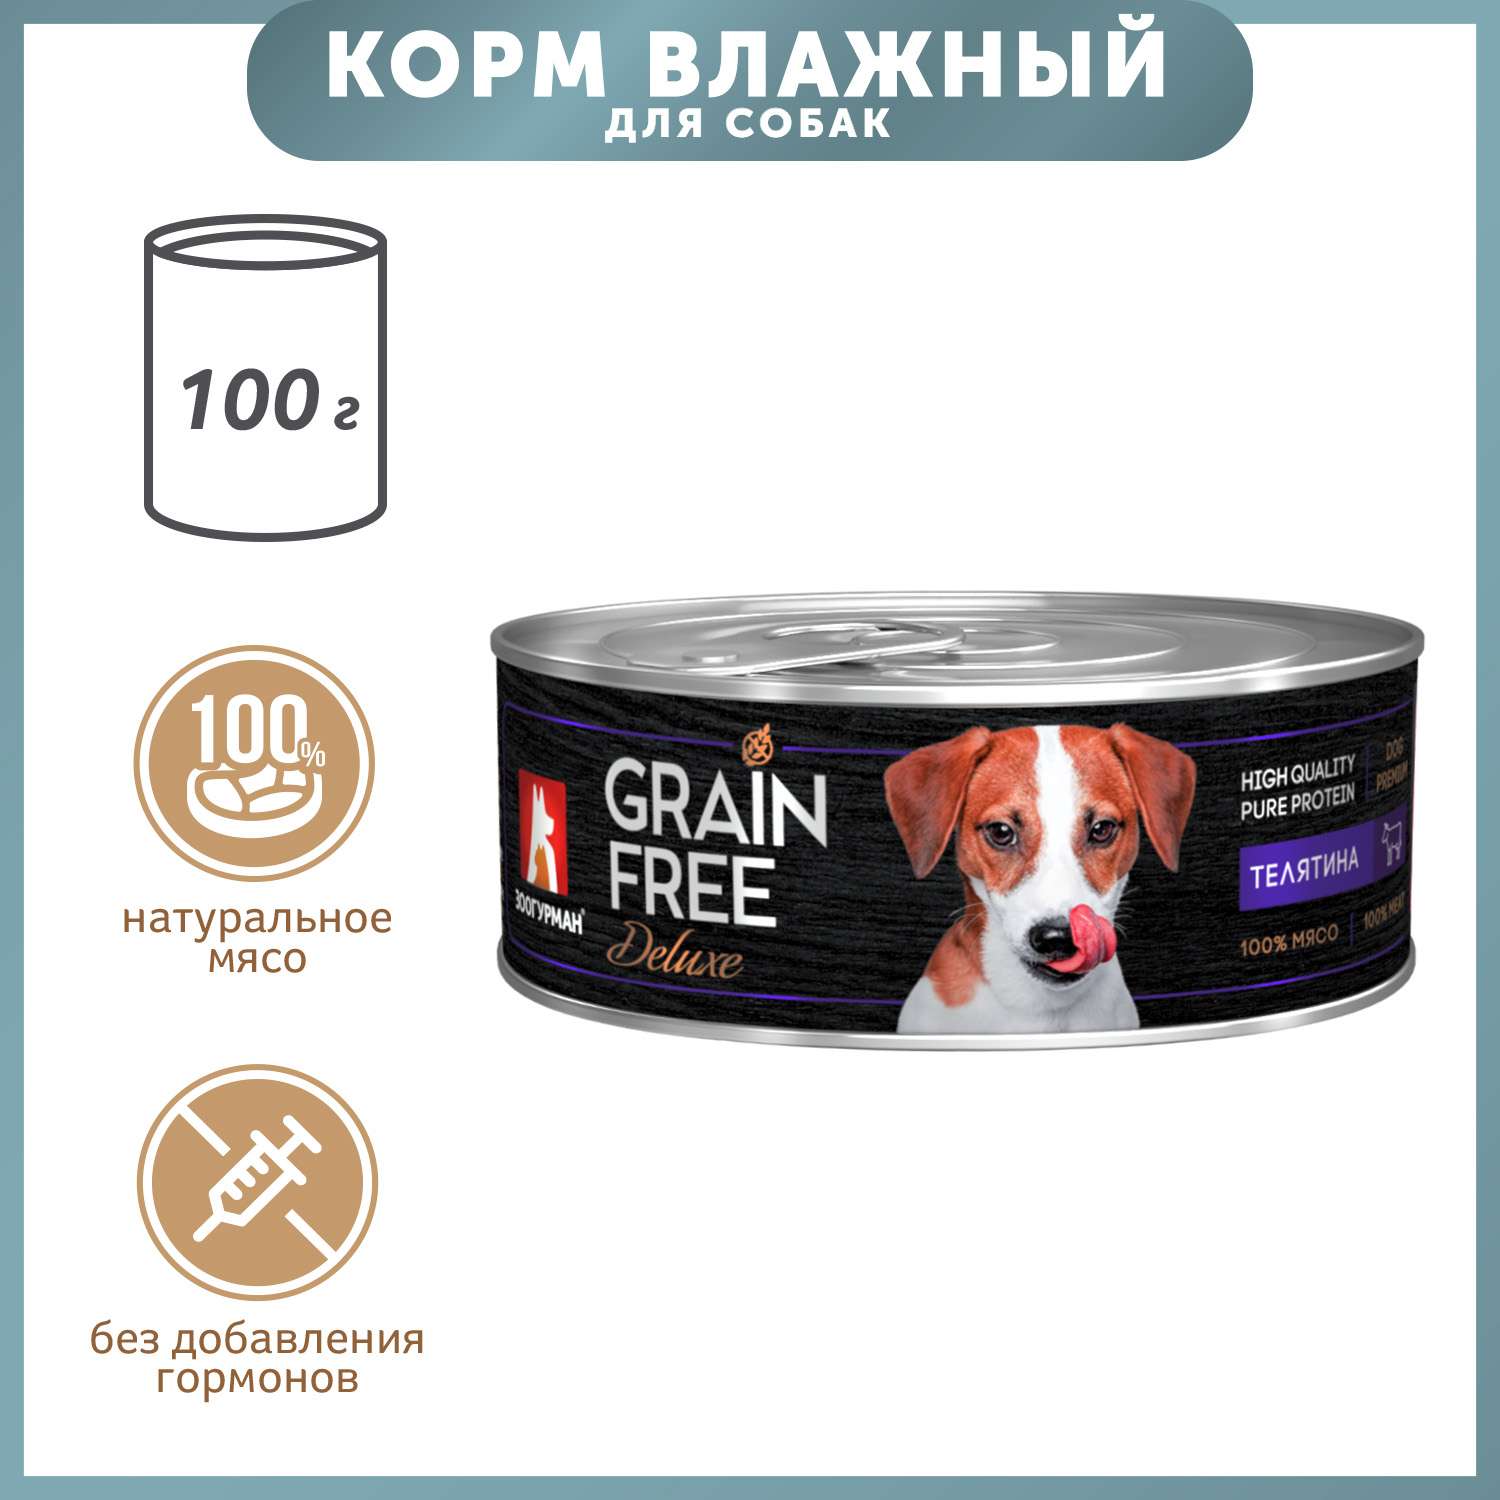 Корм для собак Зоогурман 100г Grain free телятина консервированный - фото 1